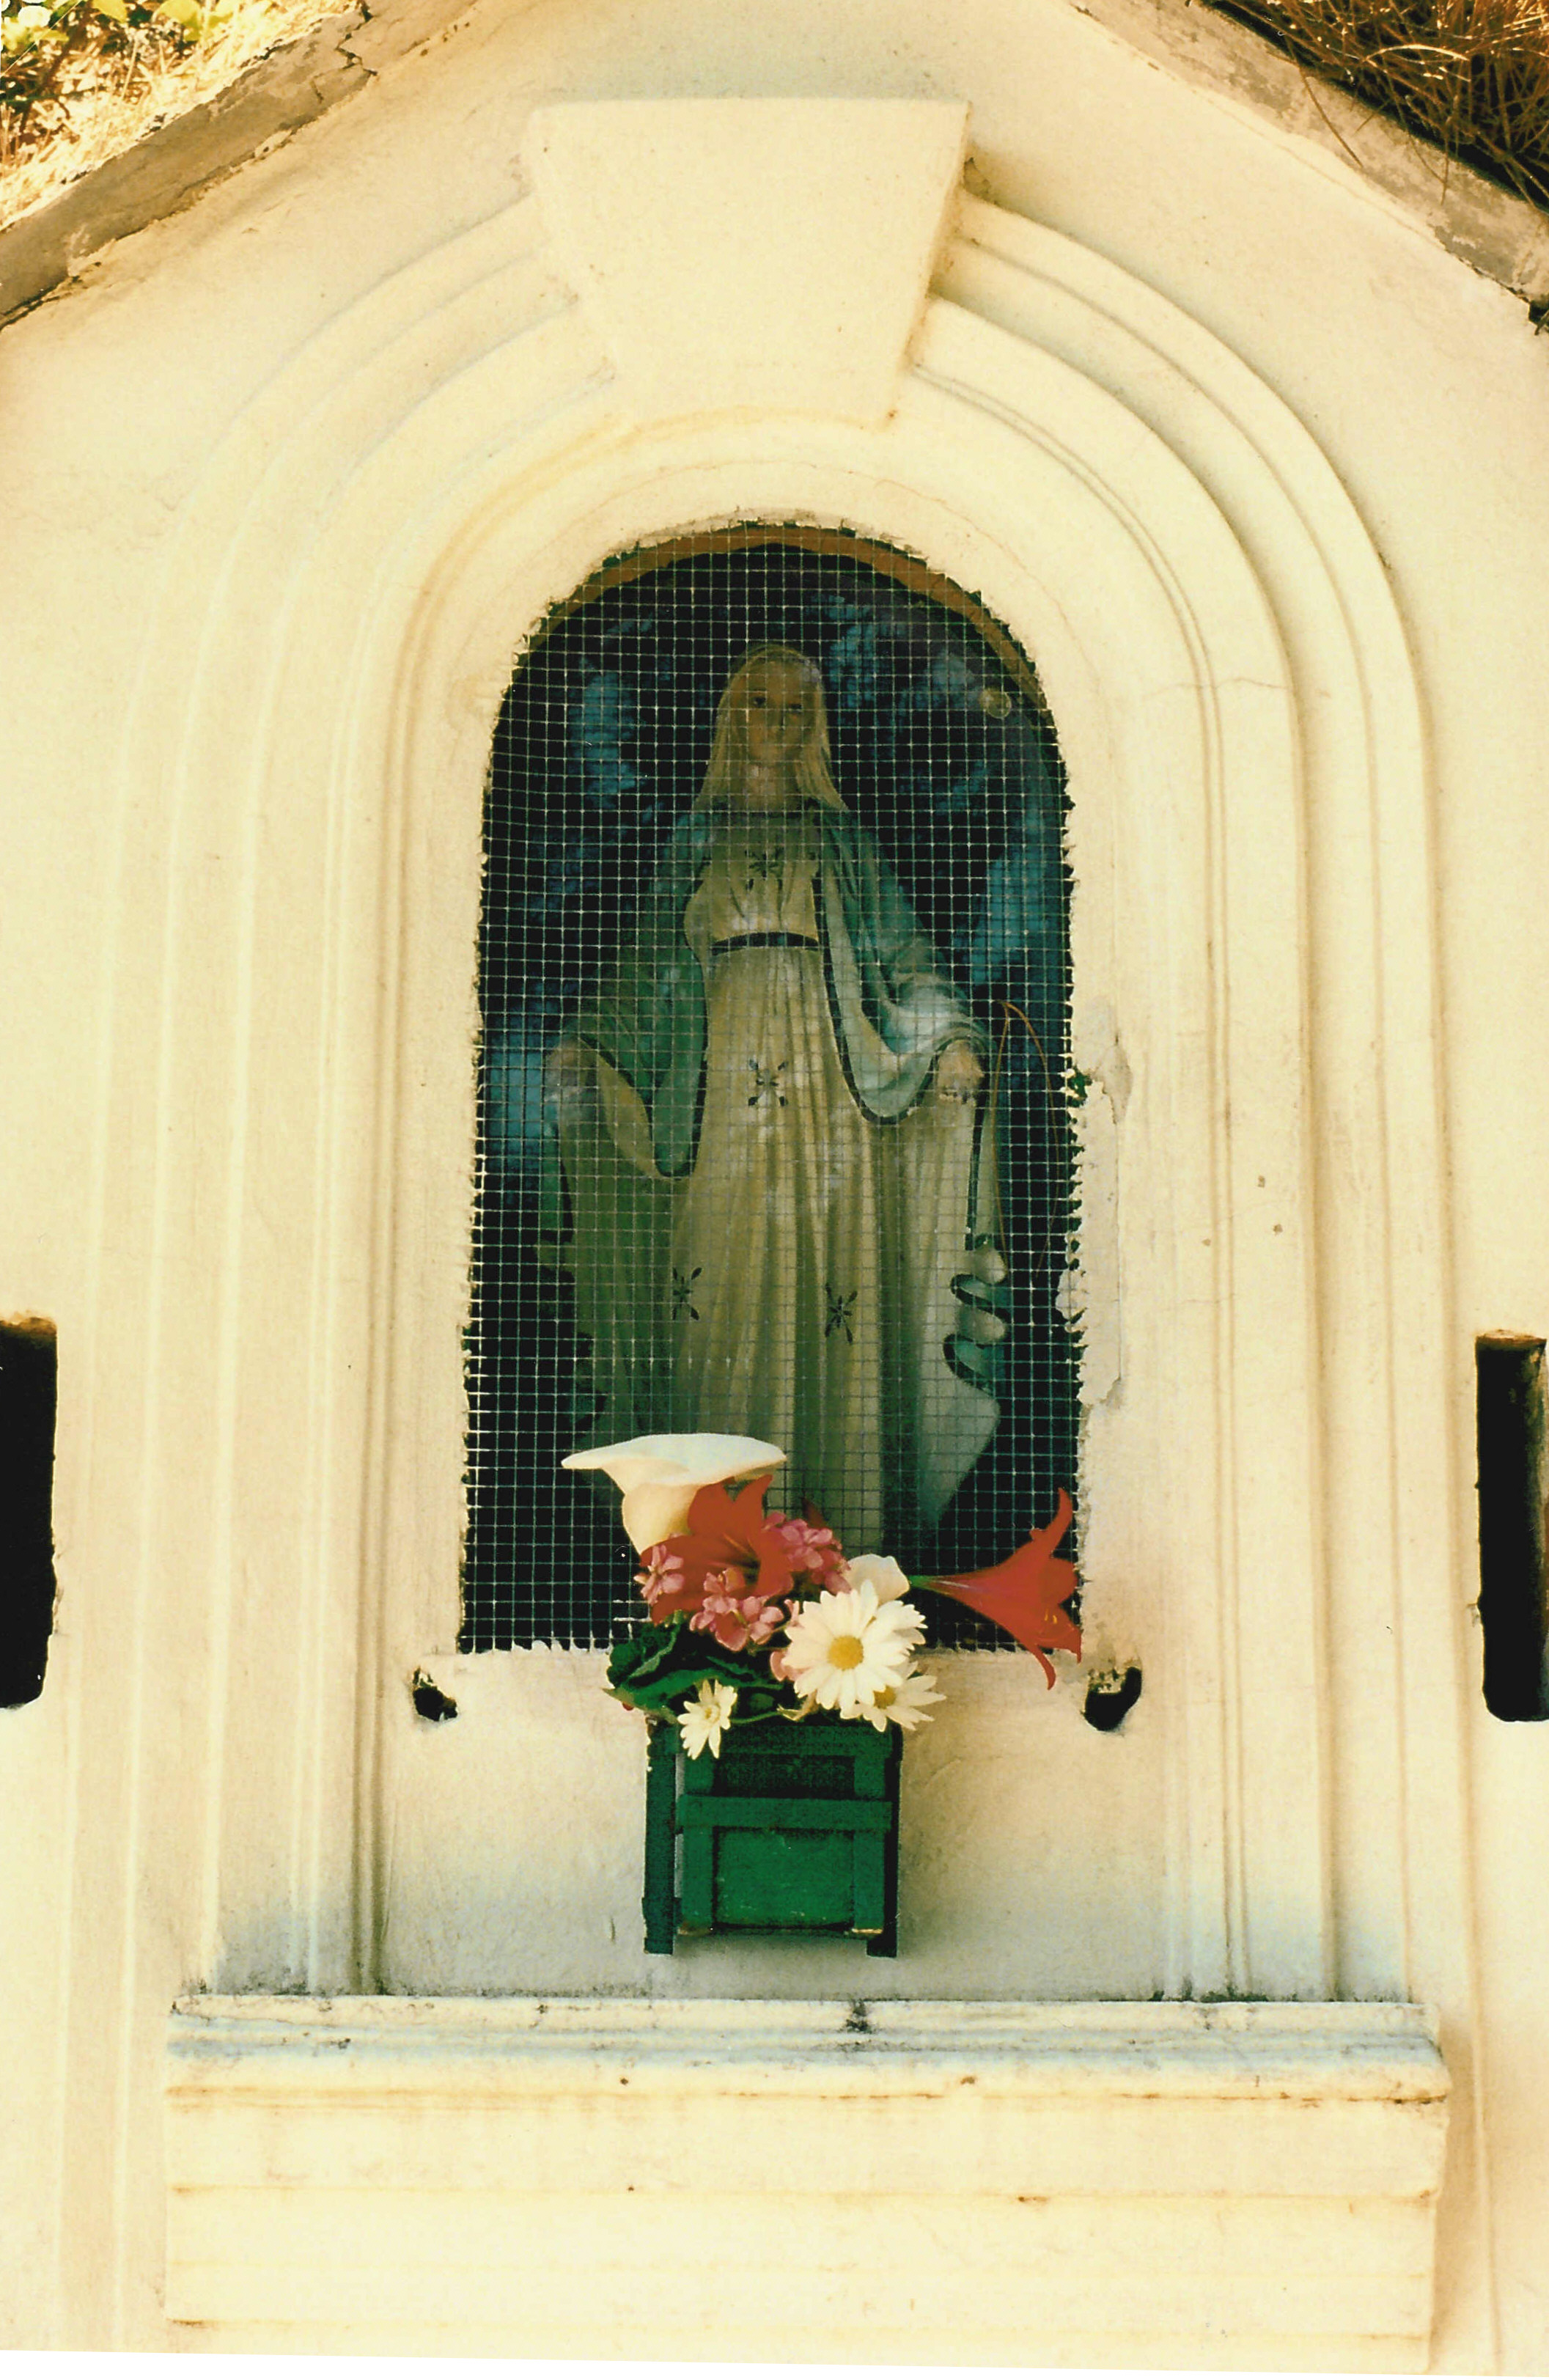 Miniature shrine in Vernazza